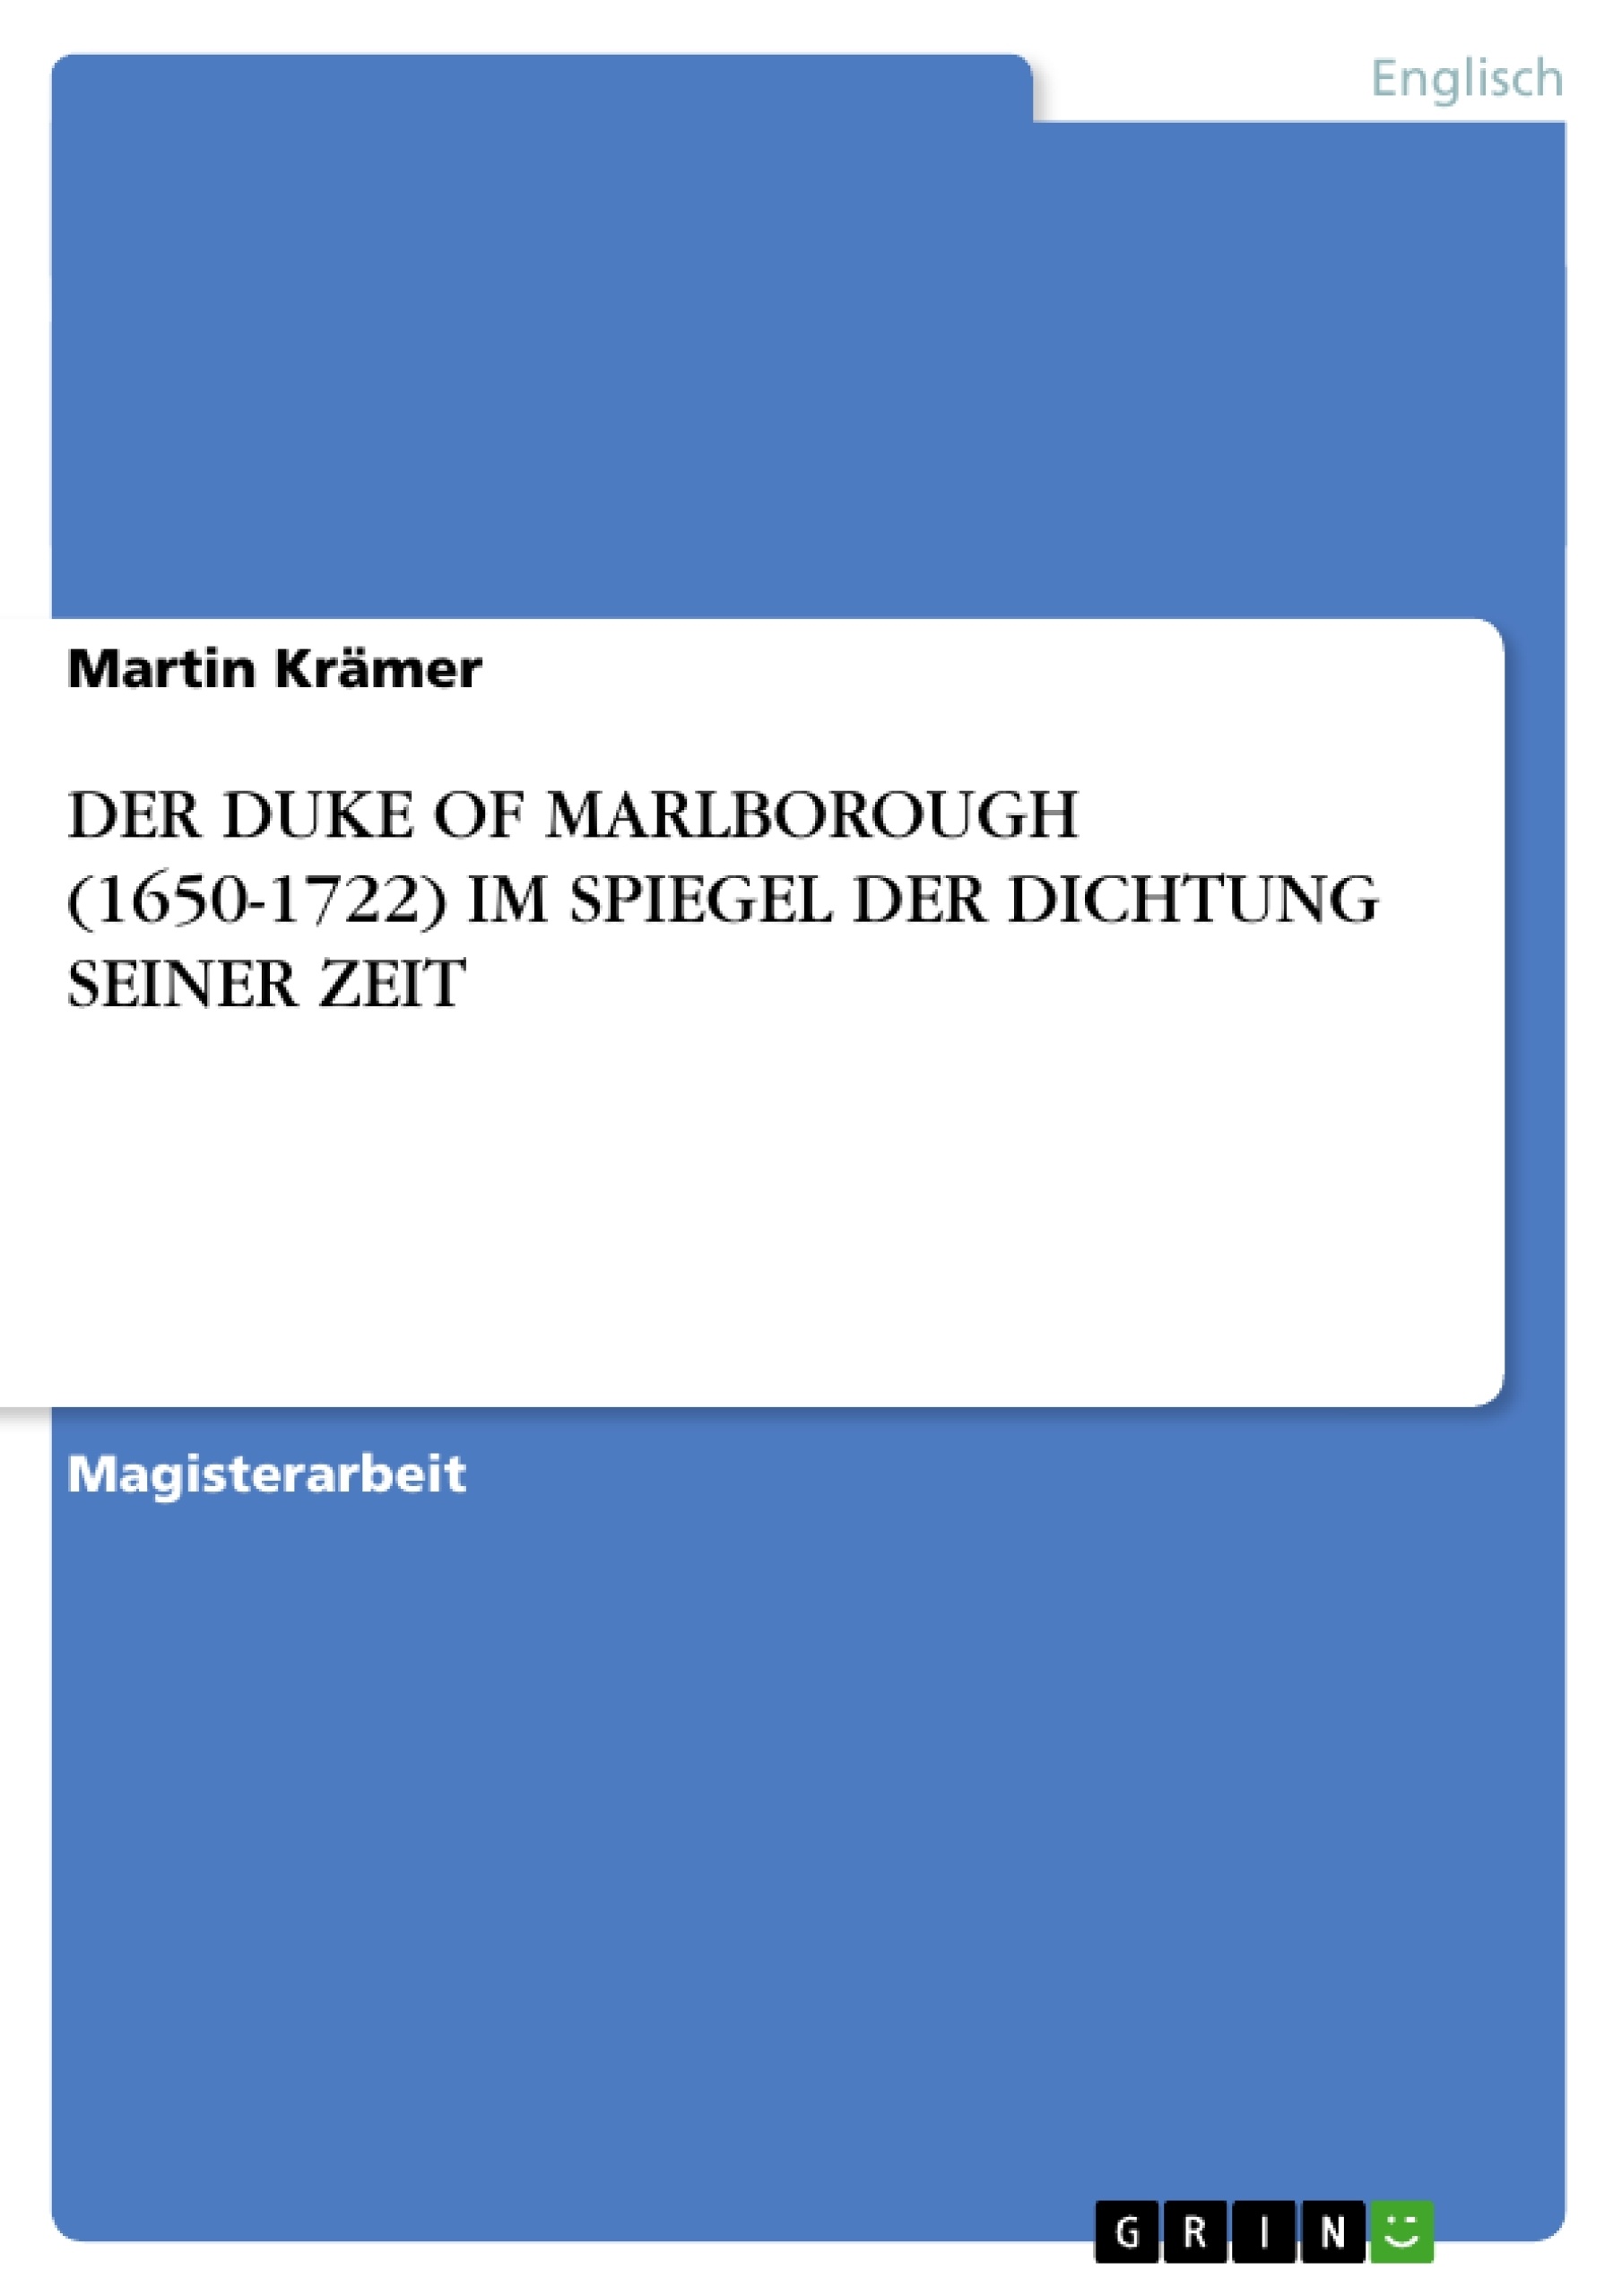 Titel: DER DUKE OF MARLBOROUGH (1650-1722) IM SPIEGEL DER DICHTUNG SEINER ZEIT